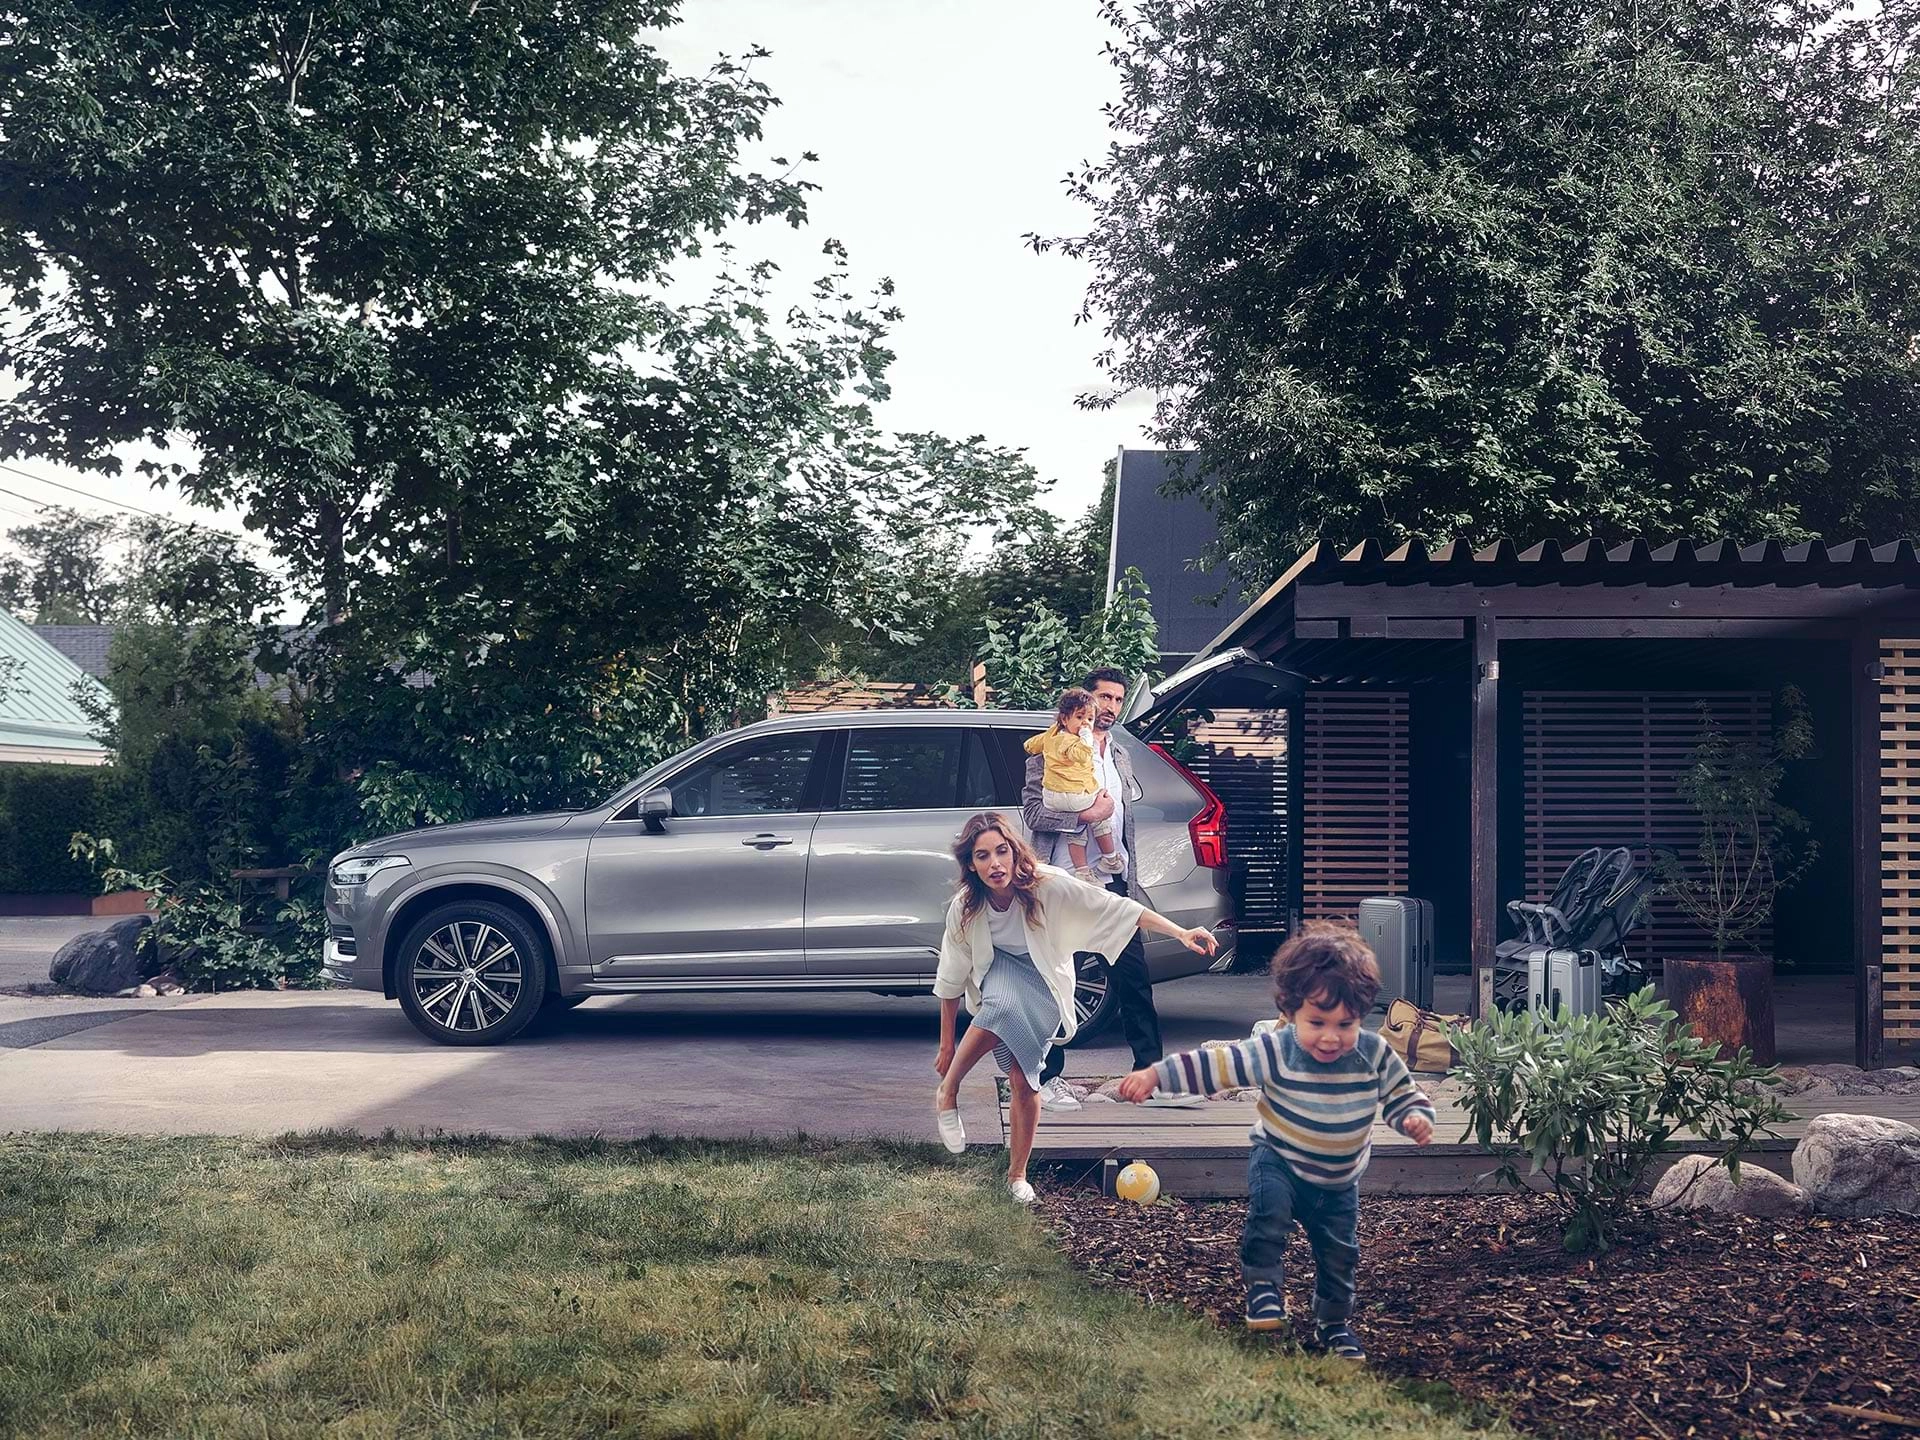 Porodica iz predgrađa se priprema za putovanje u Volvo SUV modelu, dijete trči dvorištem, juri ga majka.